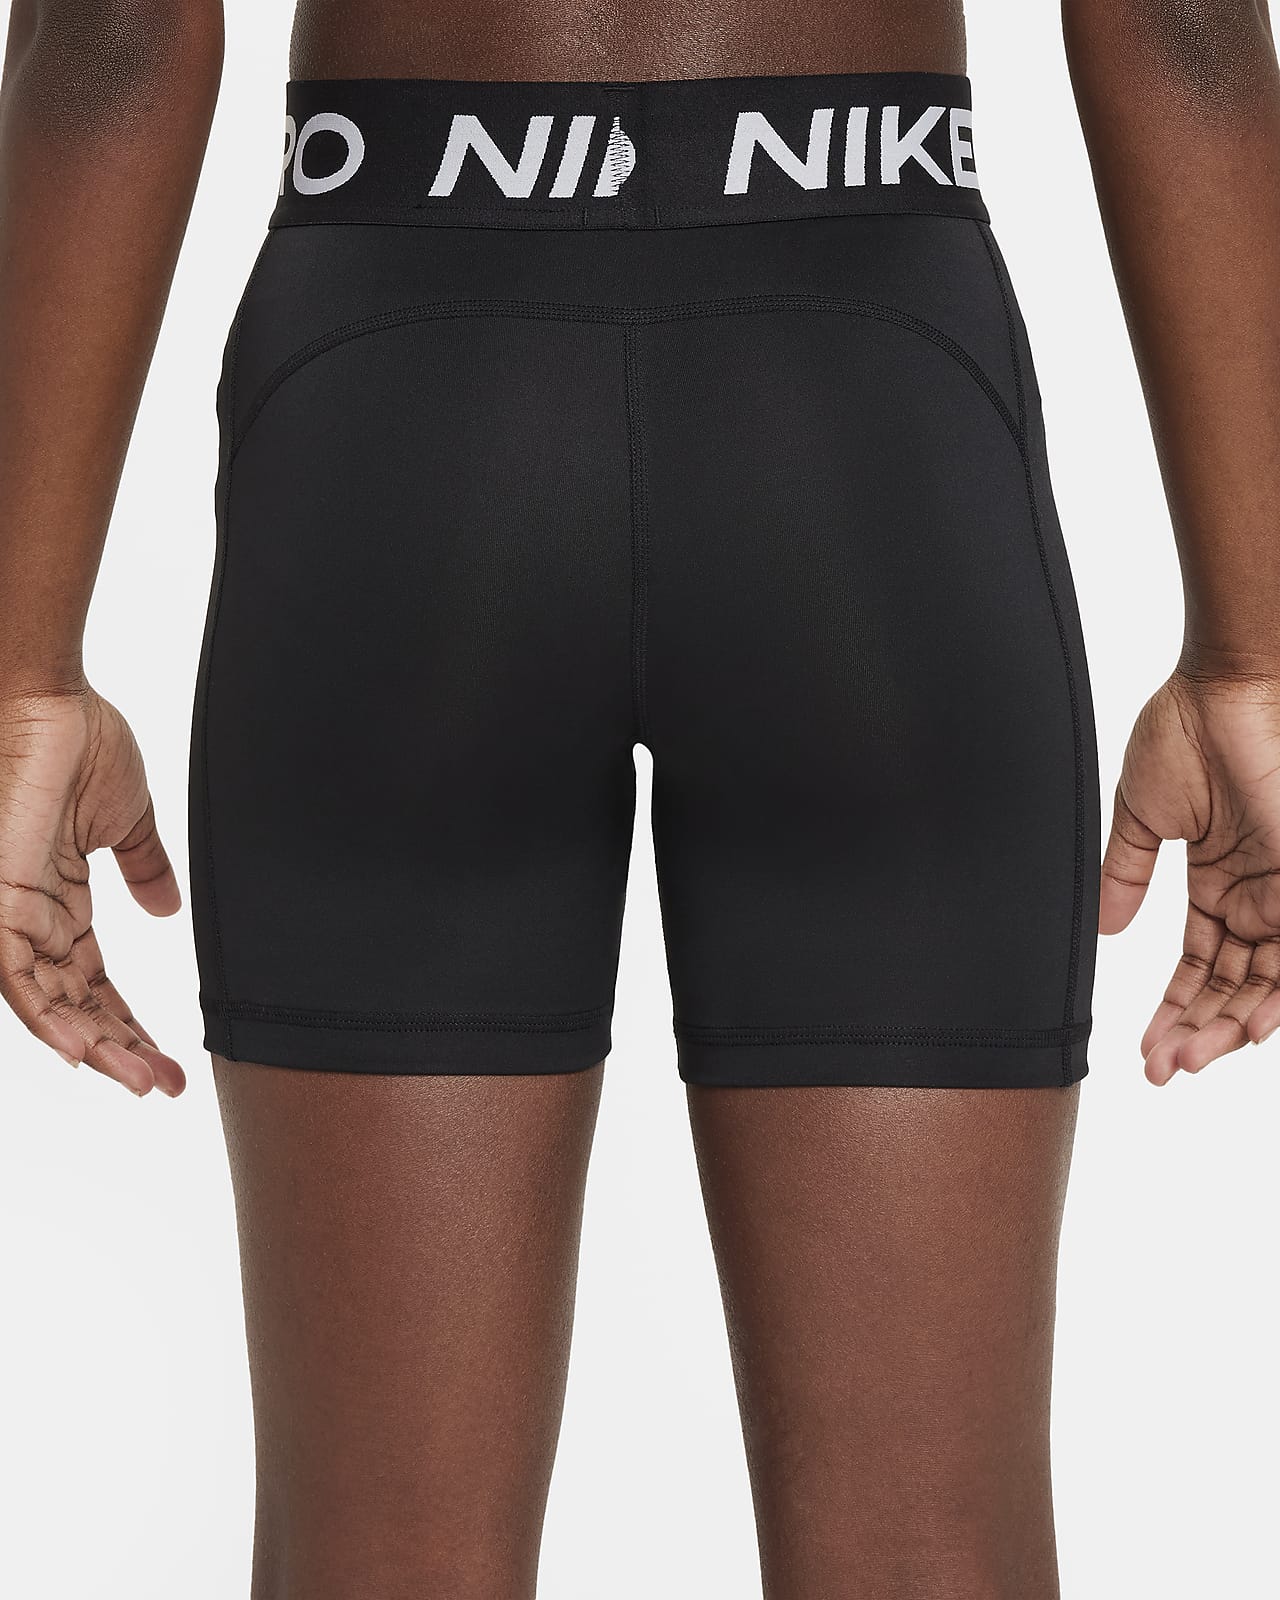 Nike Pro Girls Shorts